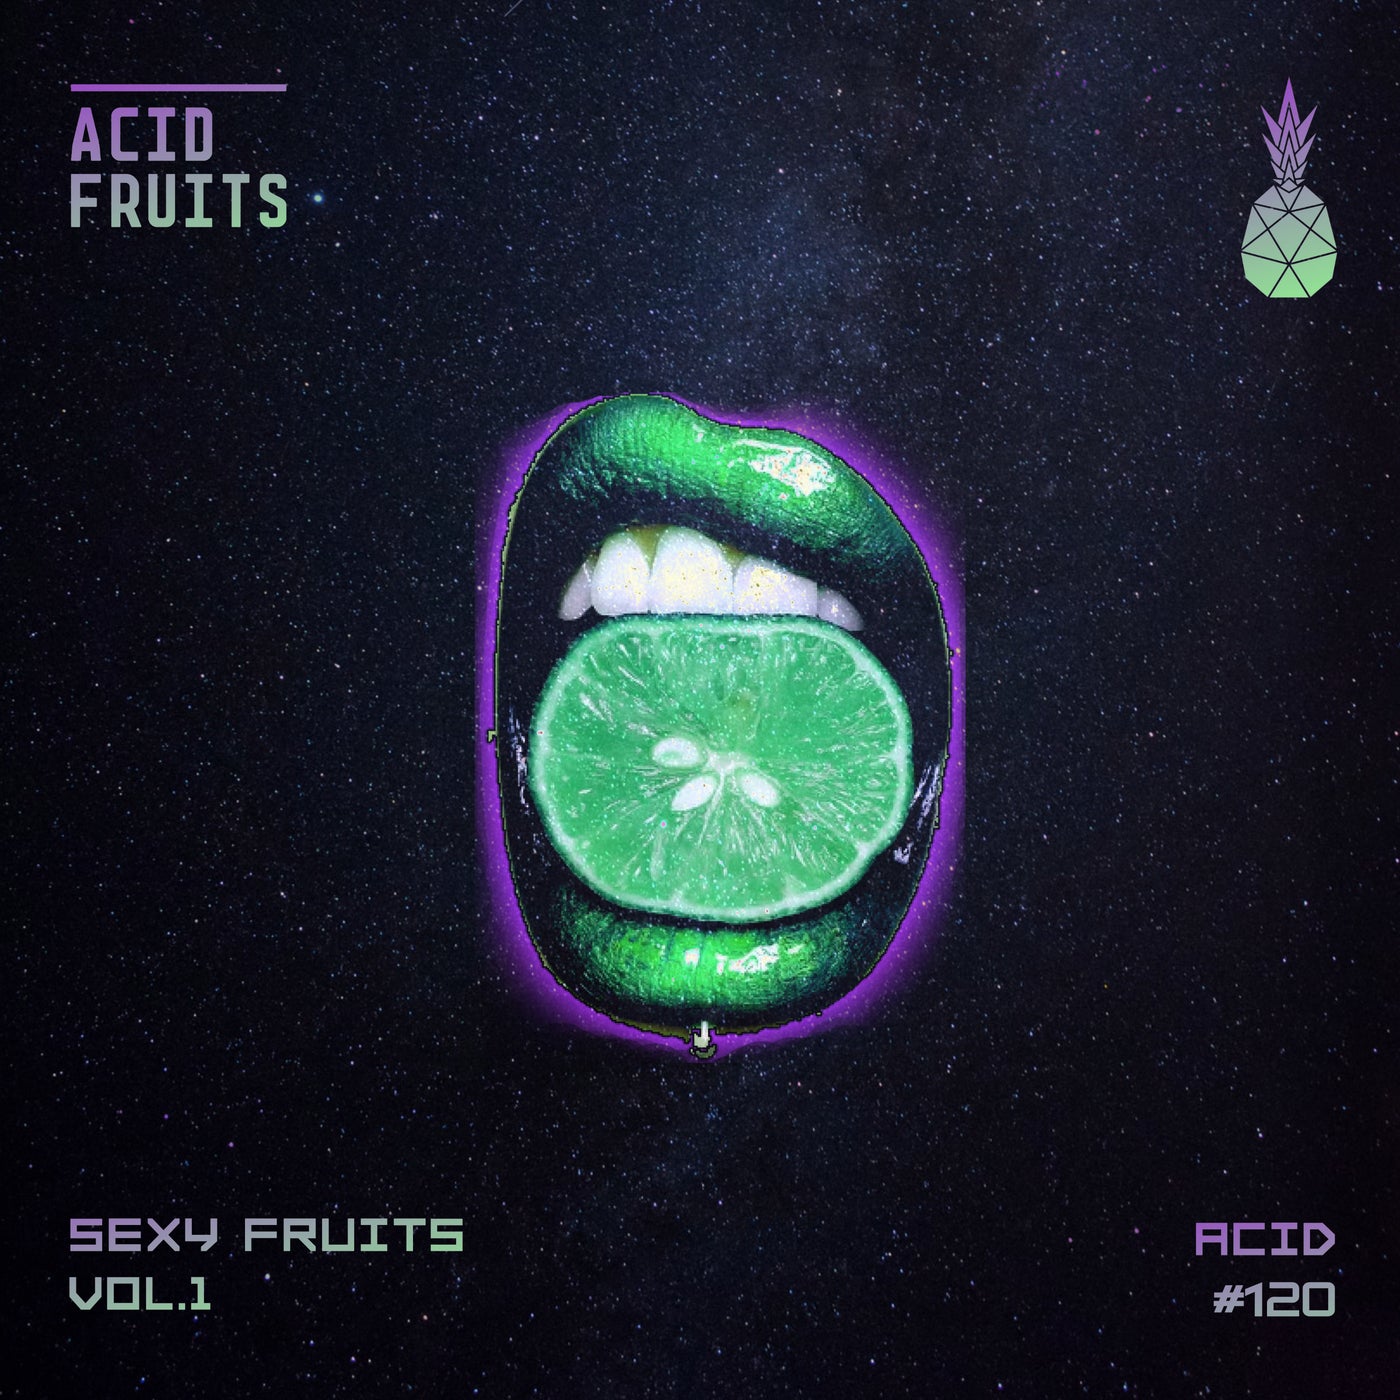 image cover: VA - Sexy Fruits Vol.1 / AF120